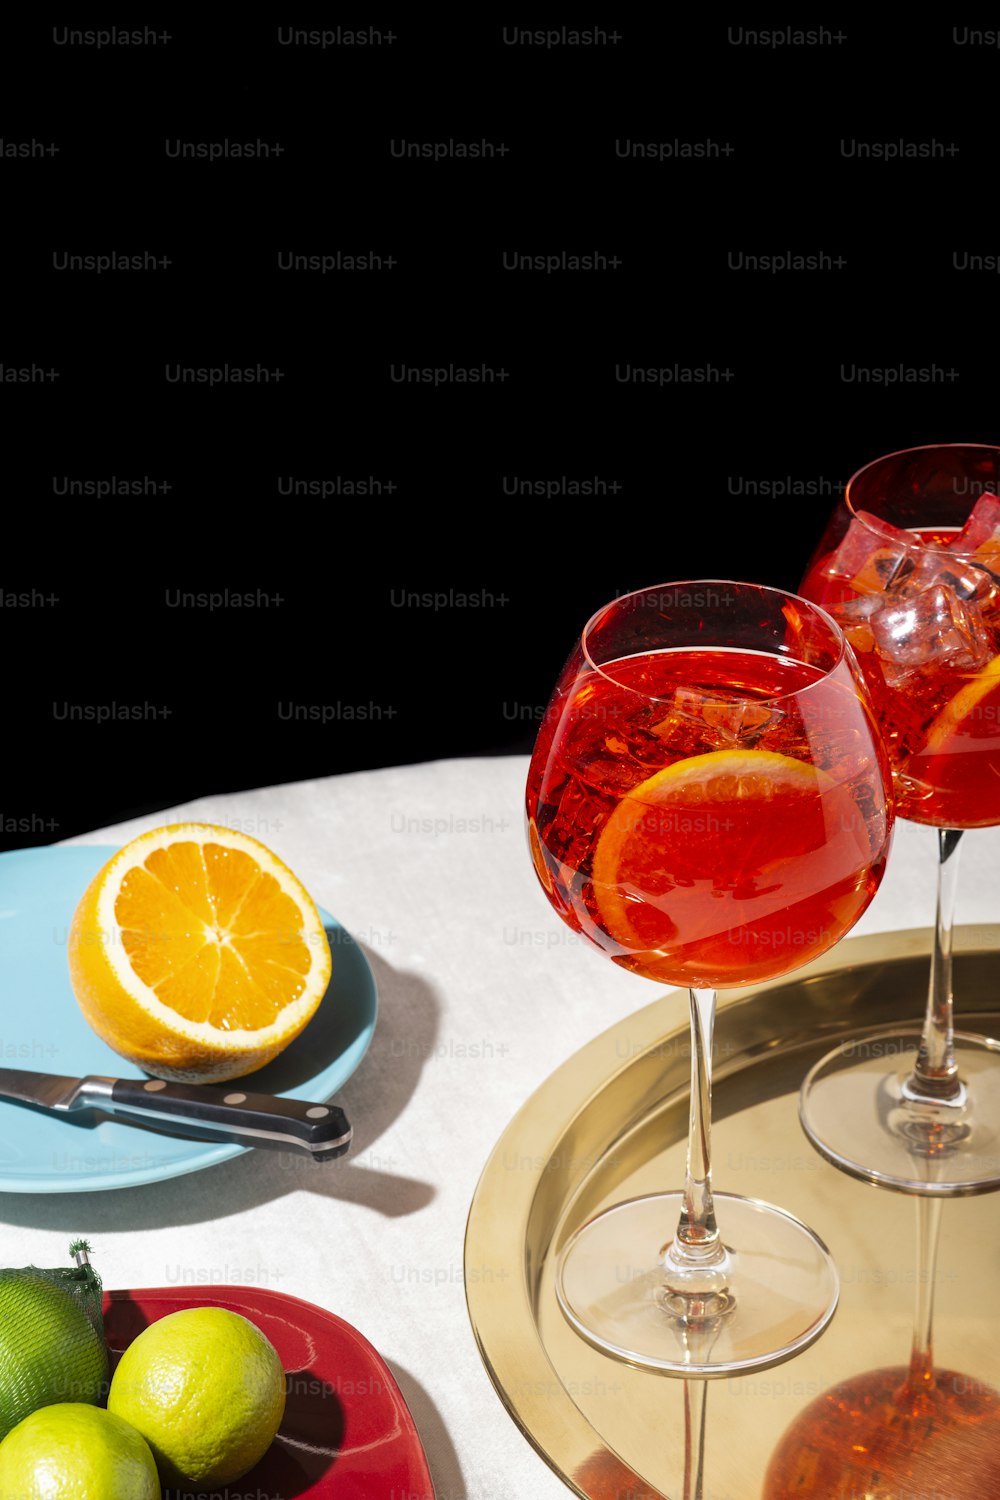 Spritz veneziano, um coquetel IBA com Prosecco ou vinho espumante branco, amargo, refrigerante, gelo e uma fatia de laranja, em um calix sobre uma mesa, estilo gráfico pop